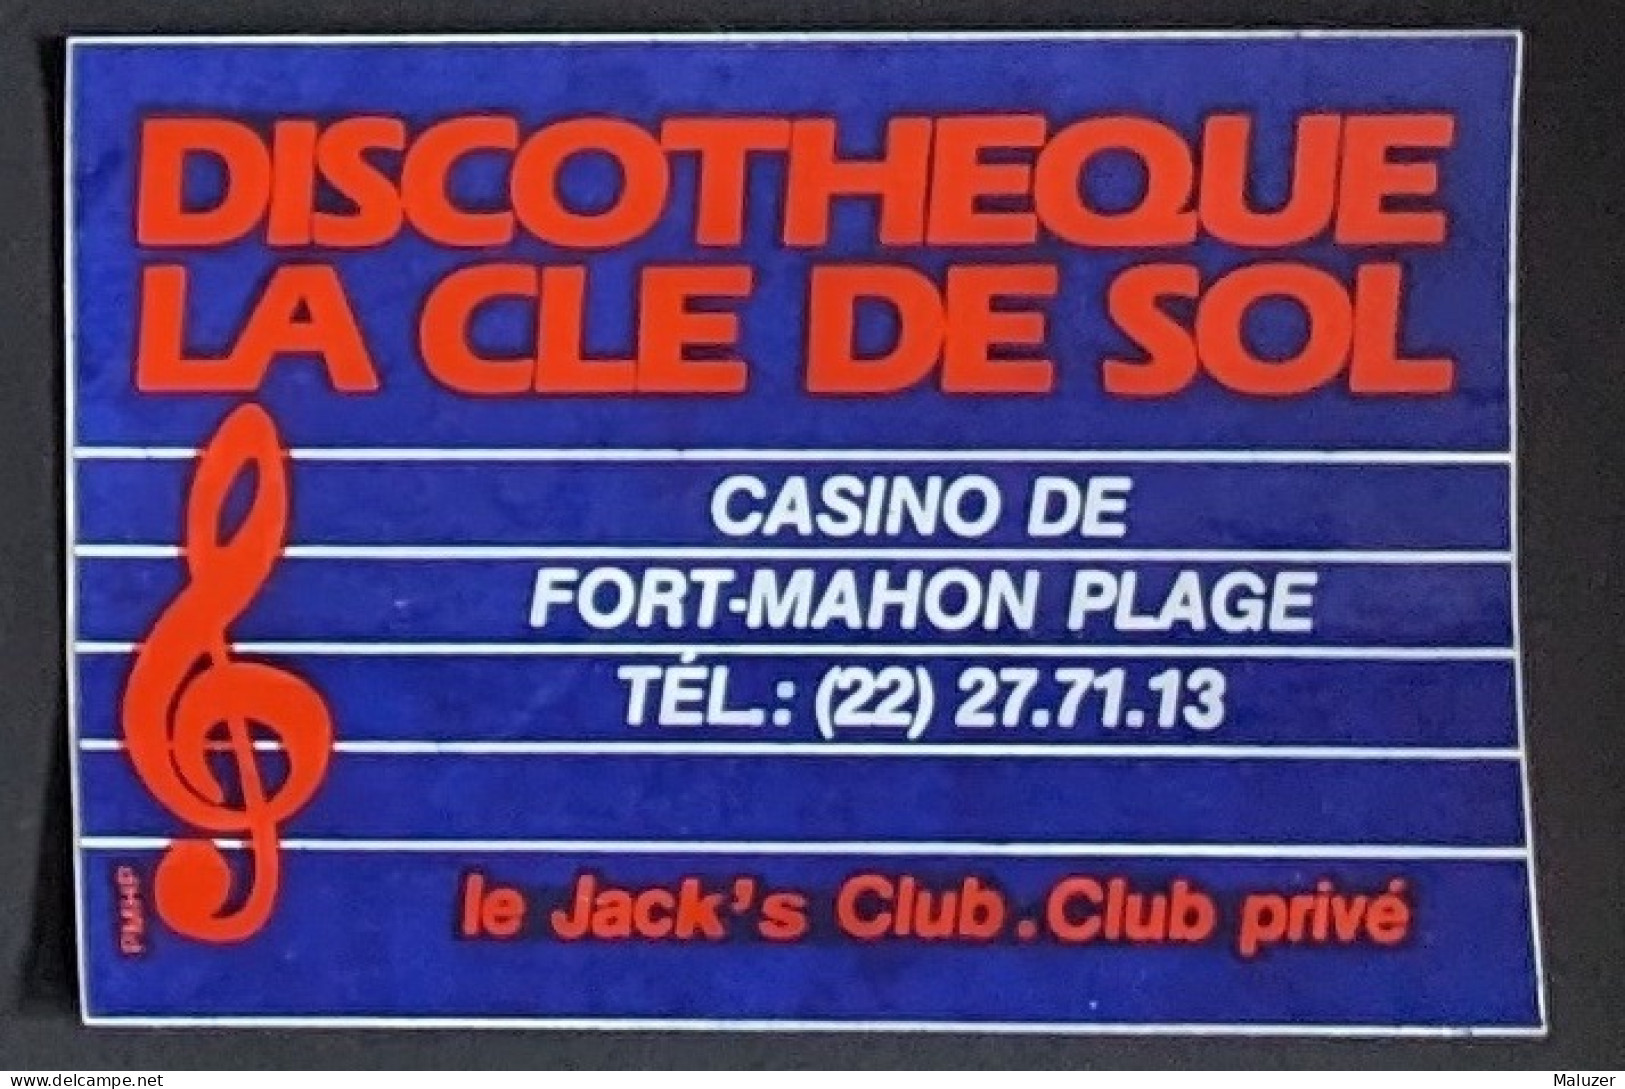 AUTOCOLLANT DISCOTHEQUE LA CLE DE SOL - CASINO DE FORT-MAHON PLAGE - LE JACK'S CLUB - CLUB PRIVÉ - 80 SOMME - DANCING - Autocollants